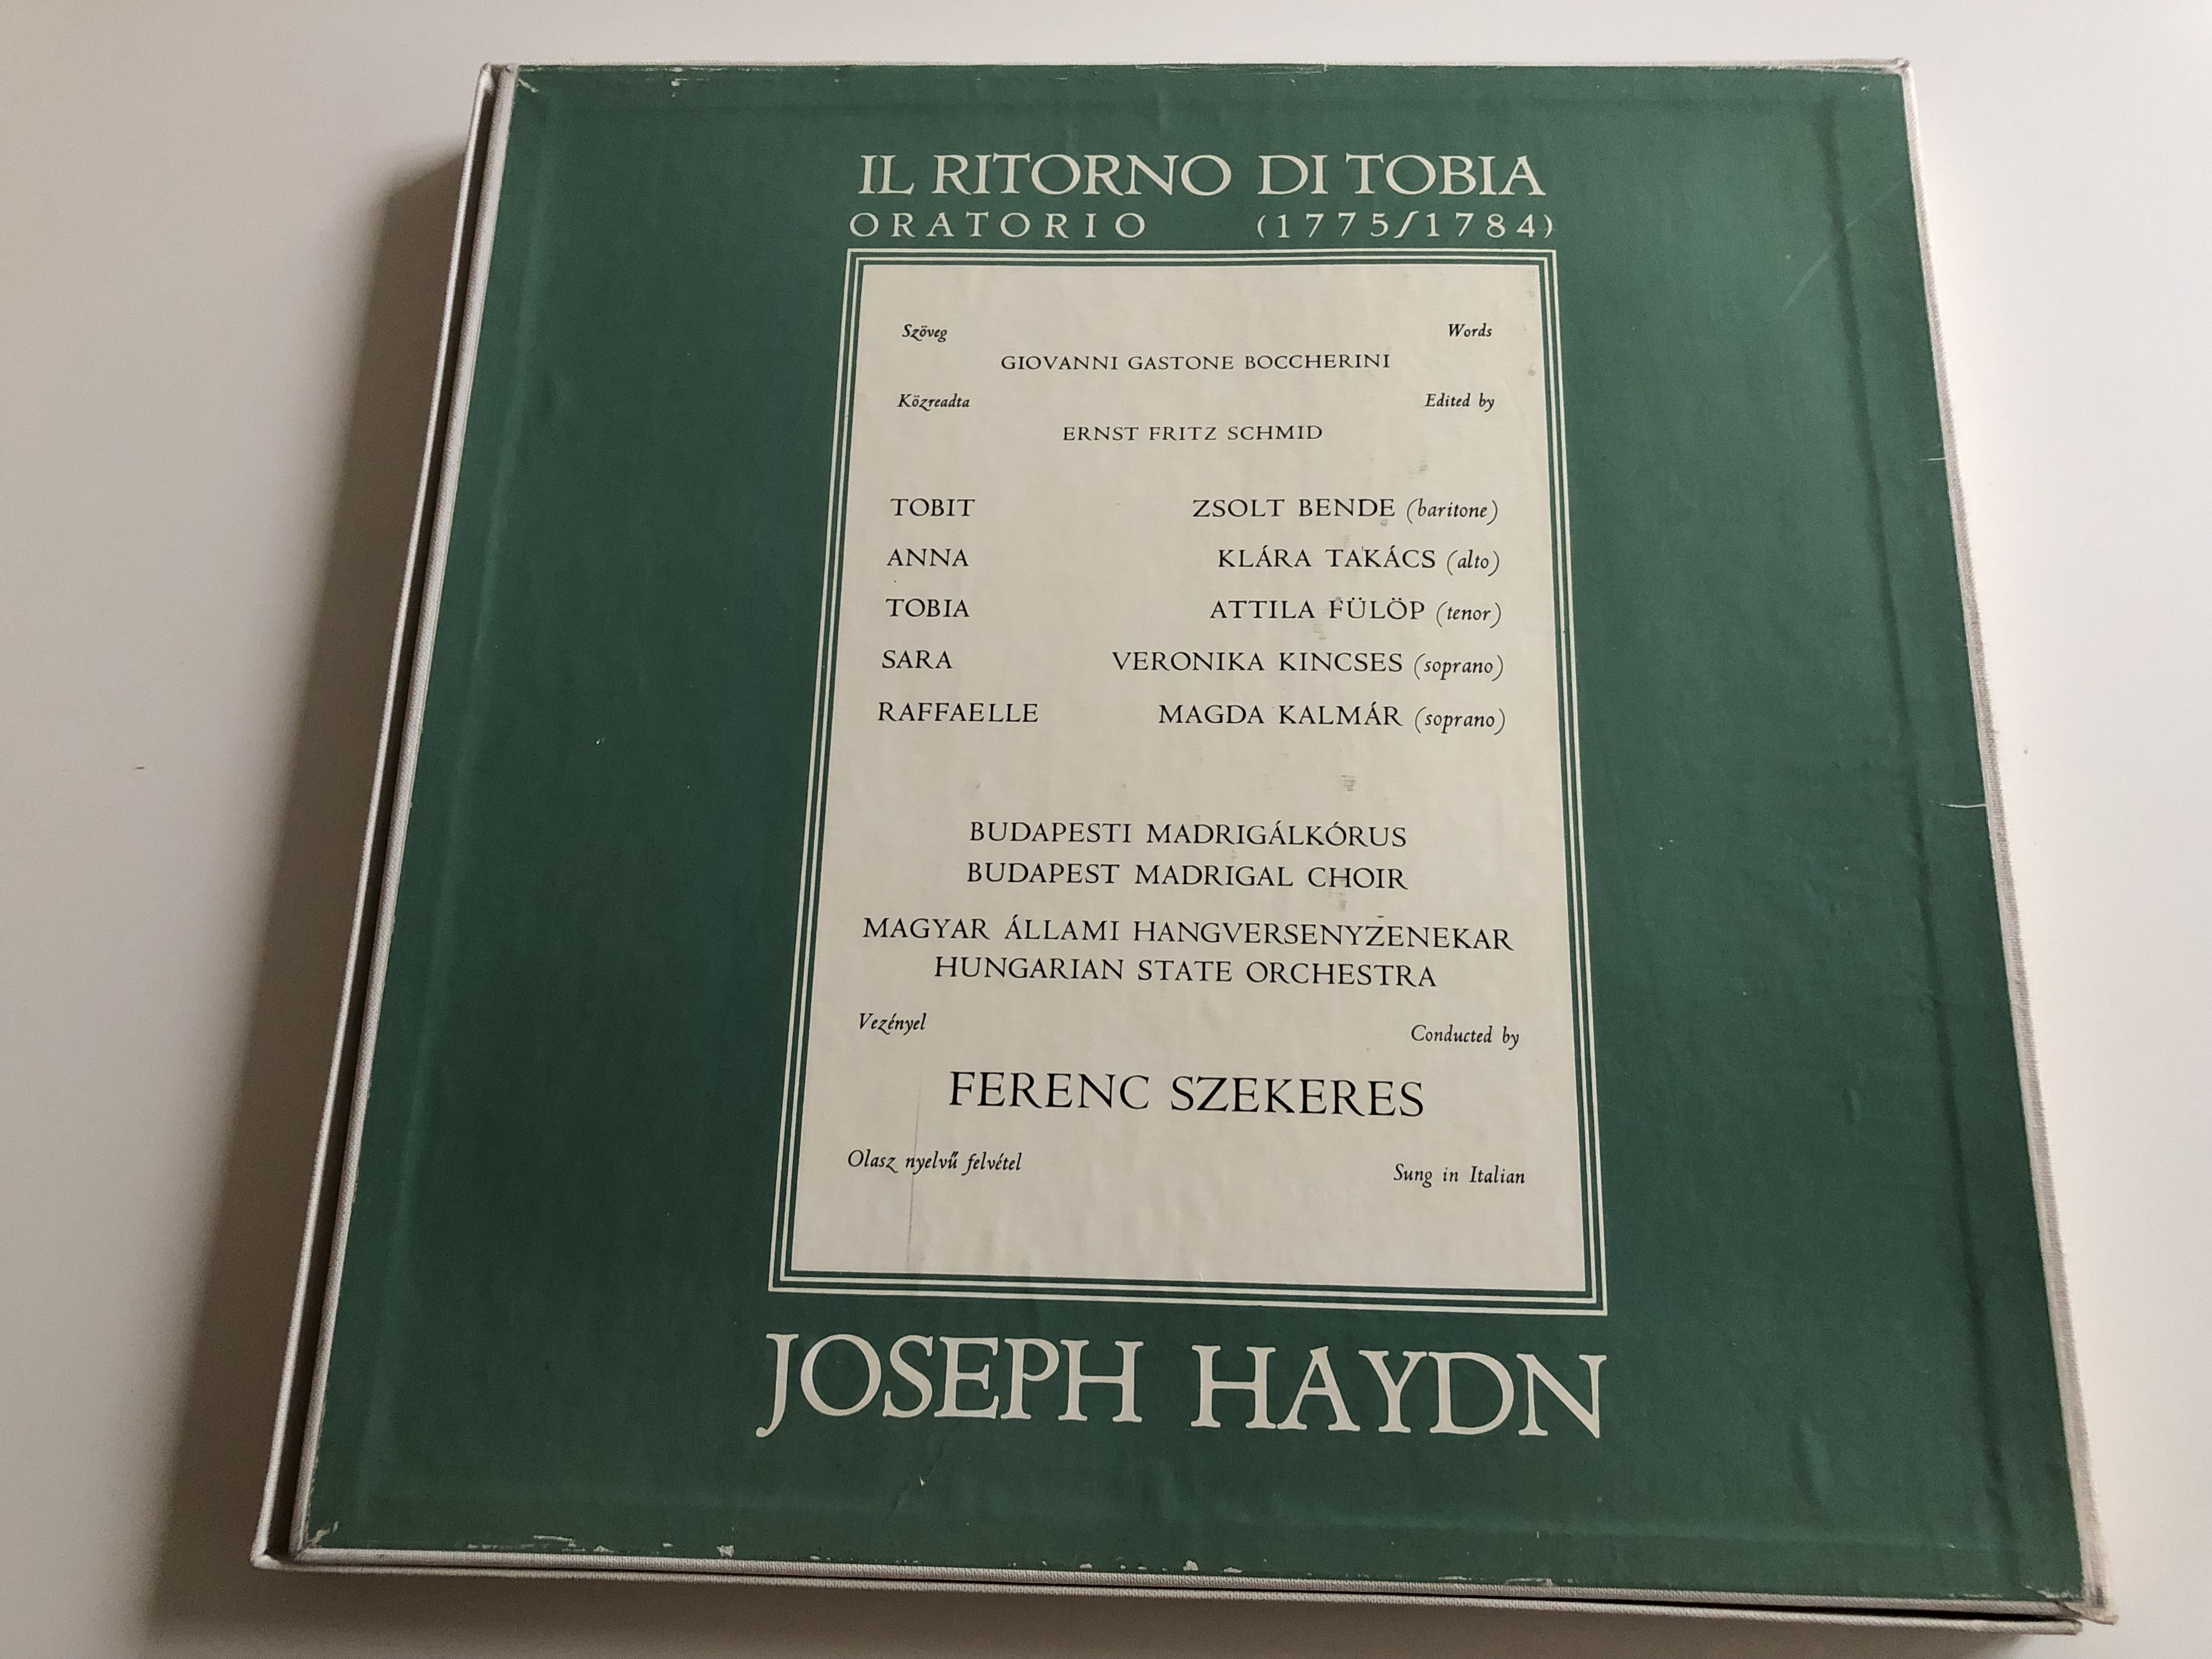 joseph-haydn-il-ritorno-di-tobia-oratorio-conducted-ferenc-szekeres-hungaroton-4x-lp-stereo-mono-slpx-11660-63-17-.jpg